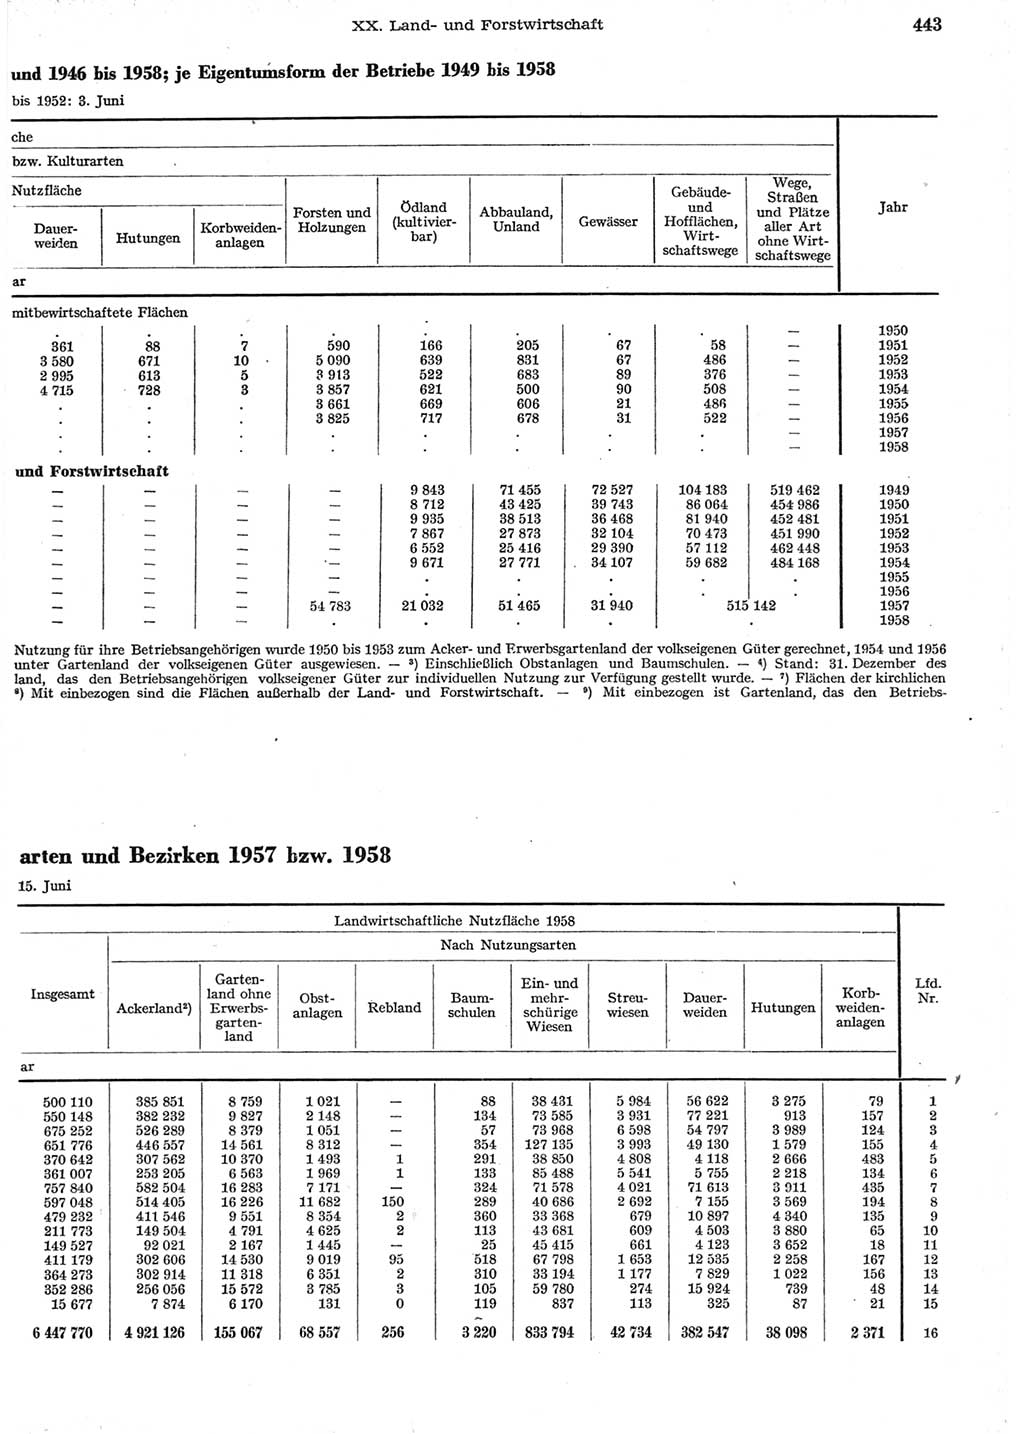 Statistisches Jahrbuch der Deutschen Demokratischen Republik (DDR) 1958, Seite 443 (Stat. Jb. DDR 1958, S. 443)